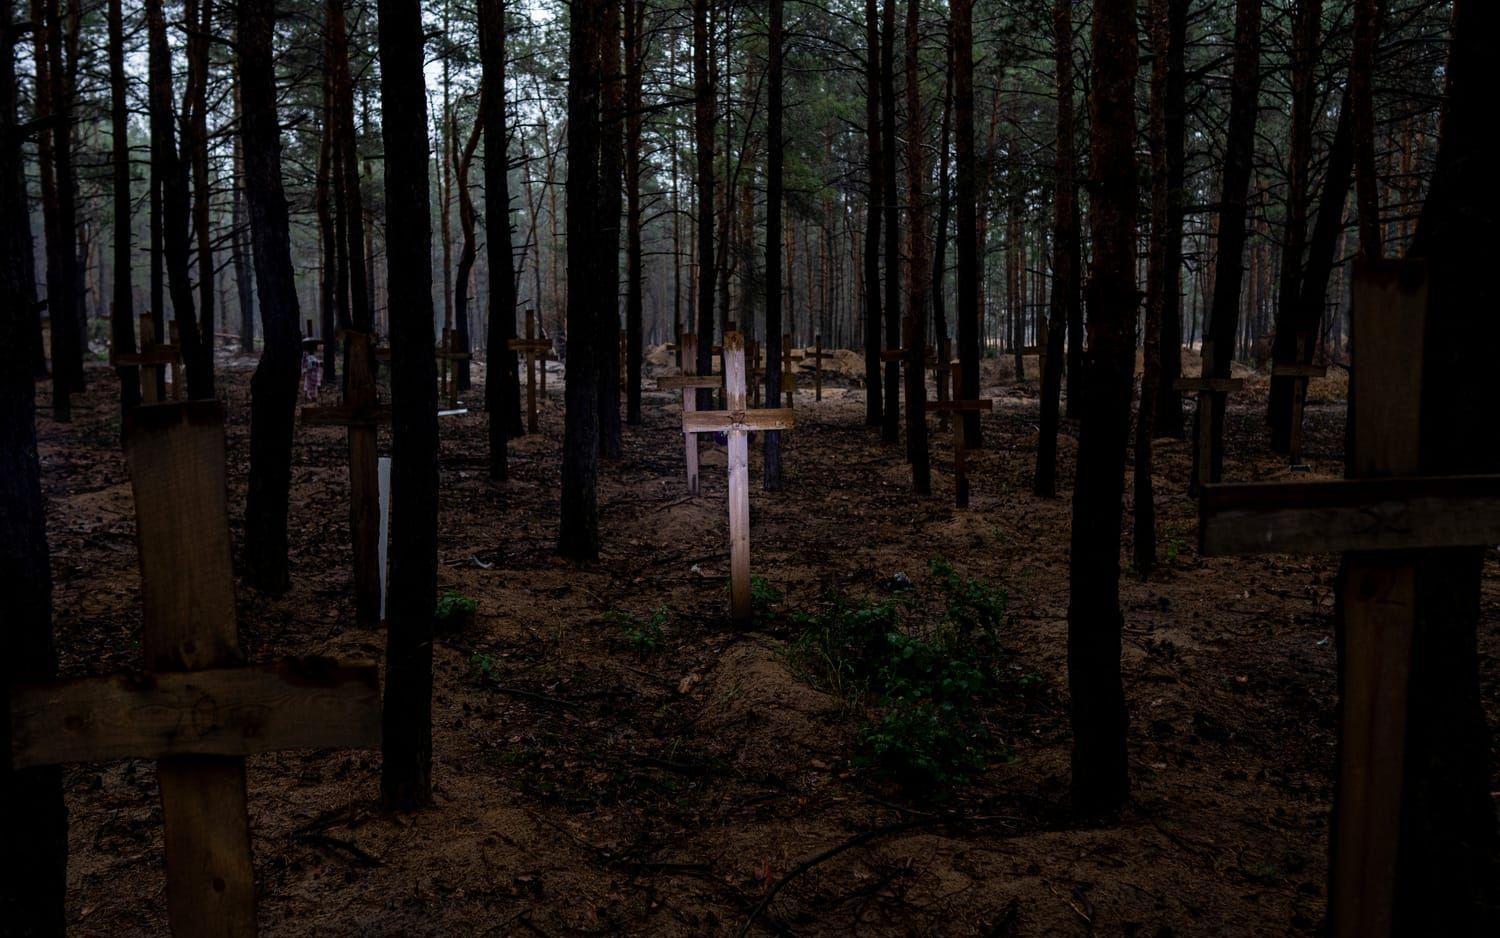 Hundratals människor, varav de flesta tros vara civila, har begravts med enkla träkors som visar var de finns. Vissa av korsen har markerats med en siffra som visar att det finns fler än en person begravd. 